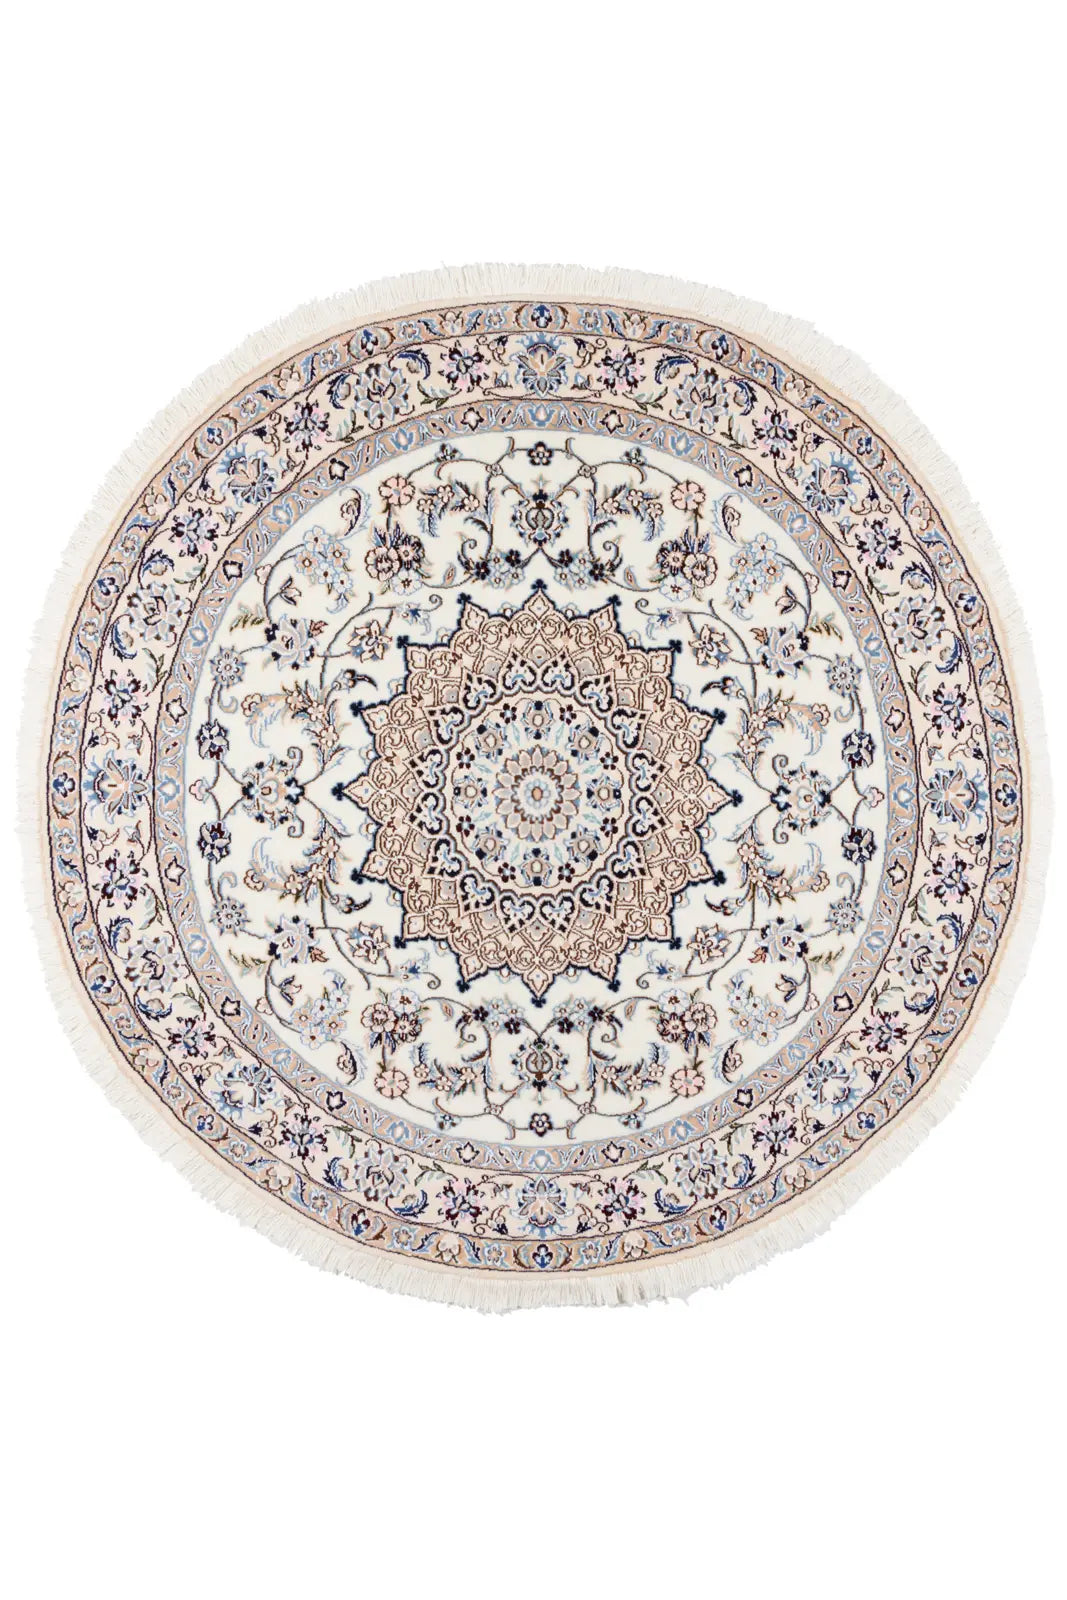 ペルシャ絨毯 円形 ナイン ウール 白